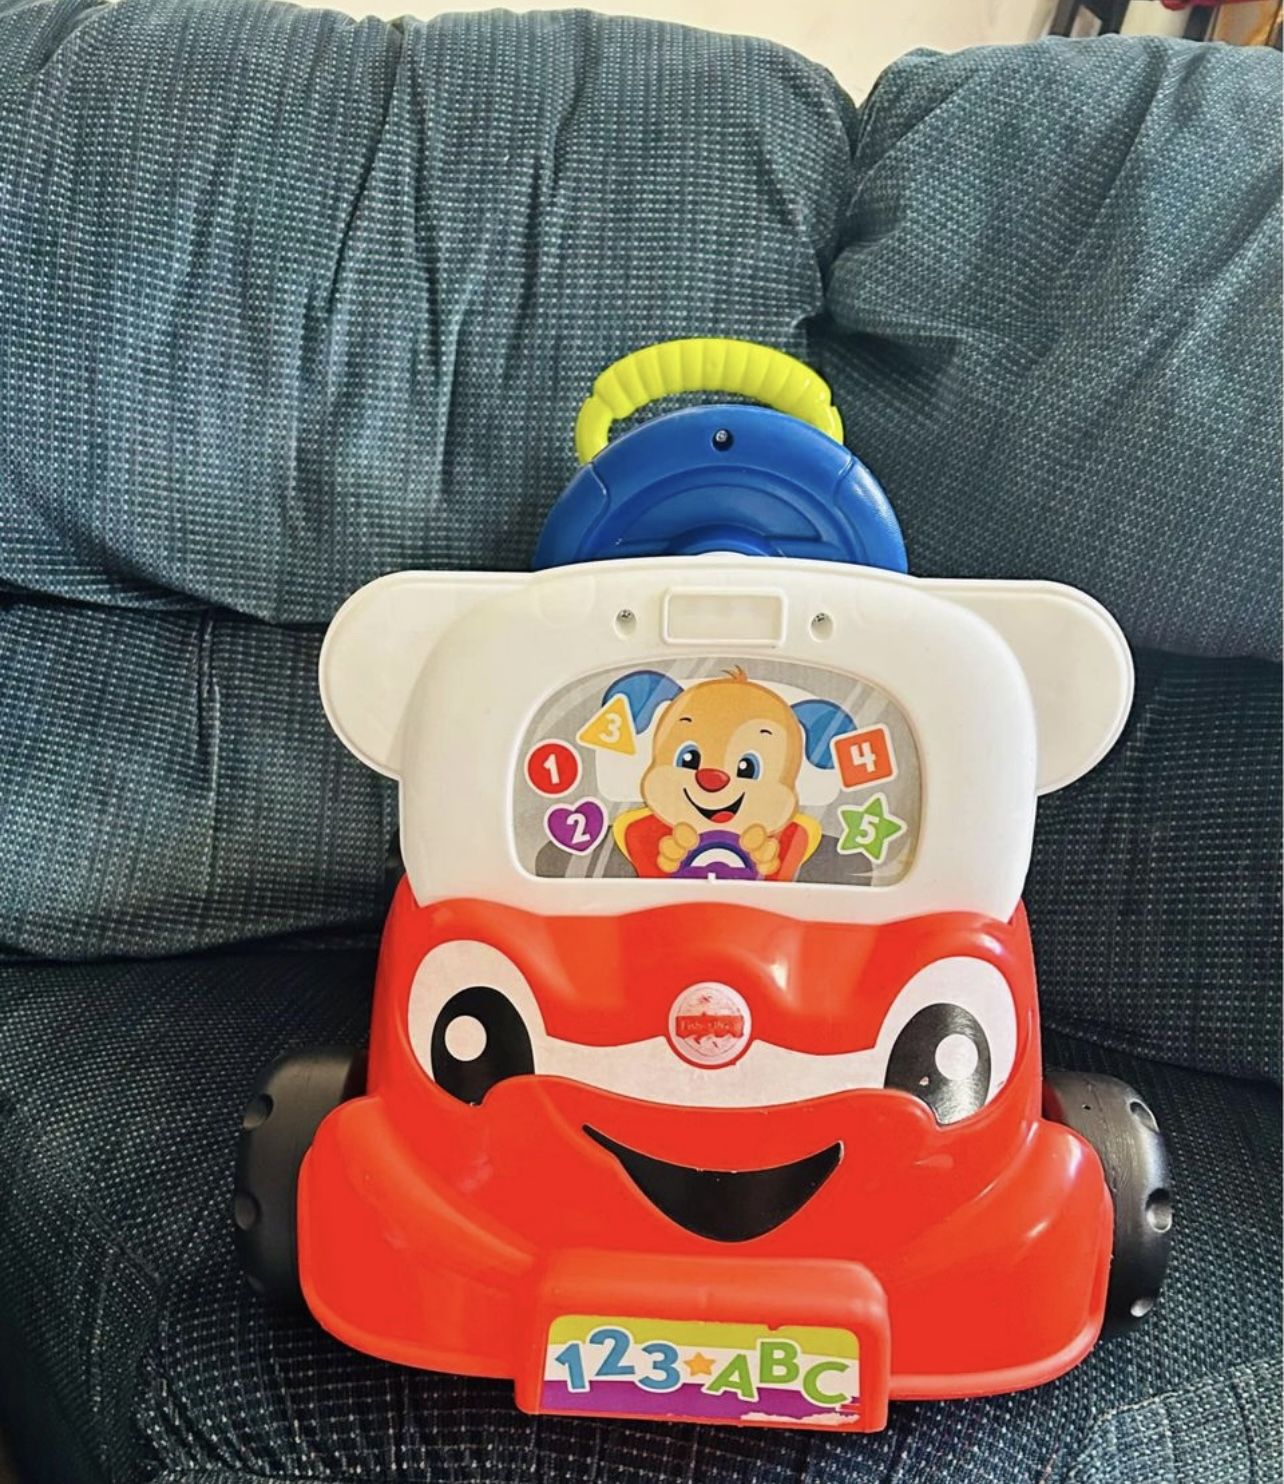 Carrito Para Niño Con Música- baby carriage with music